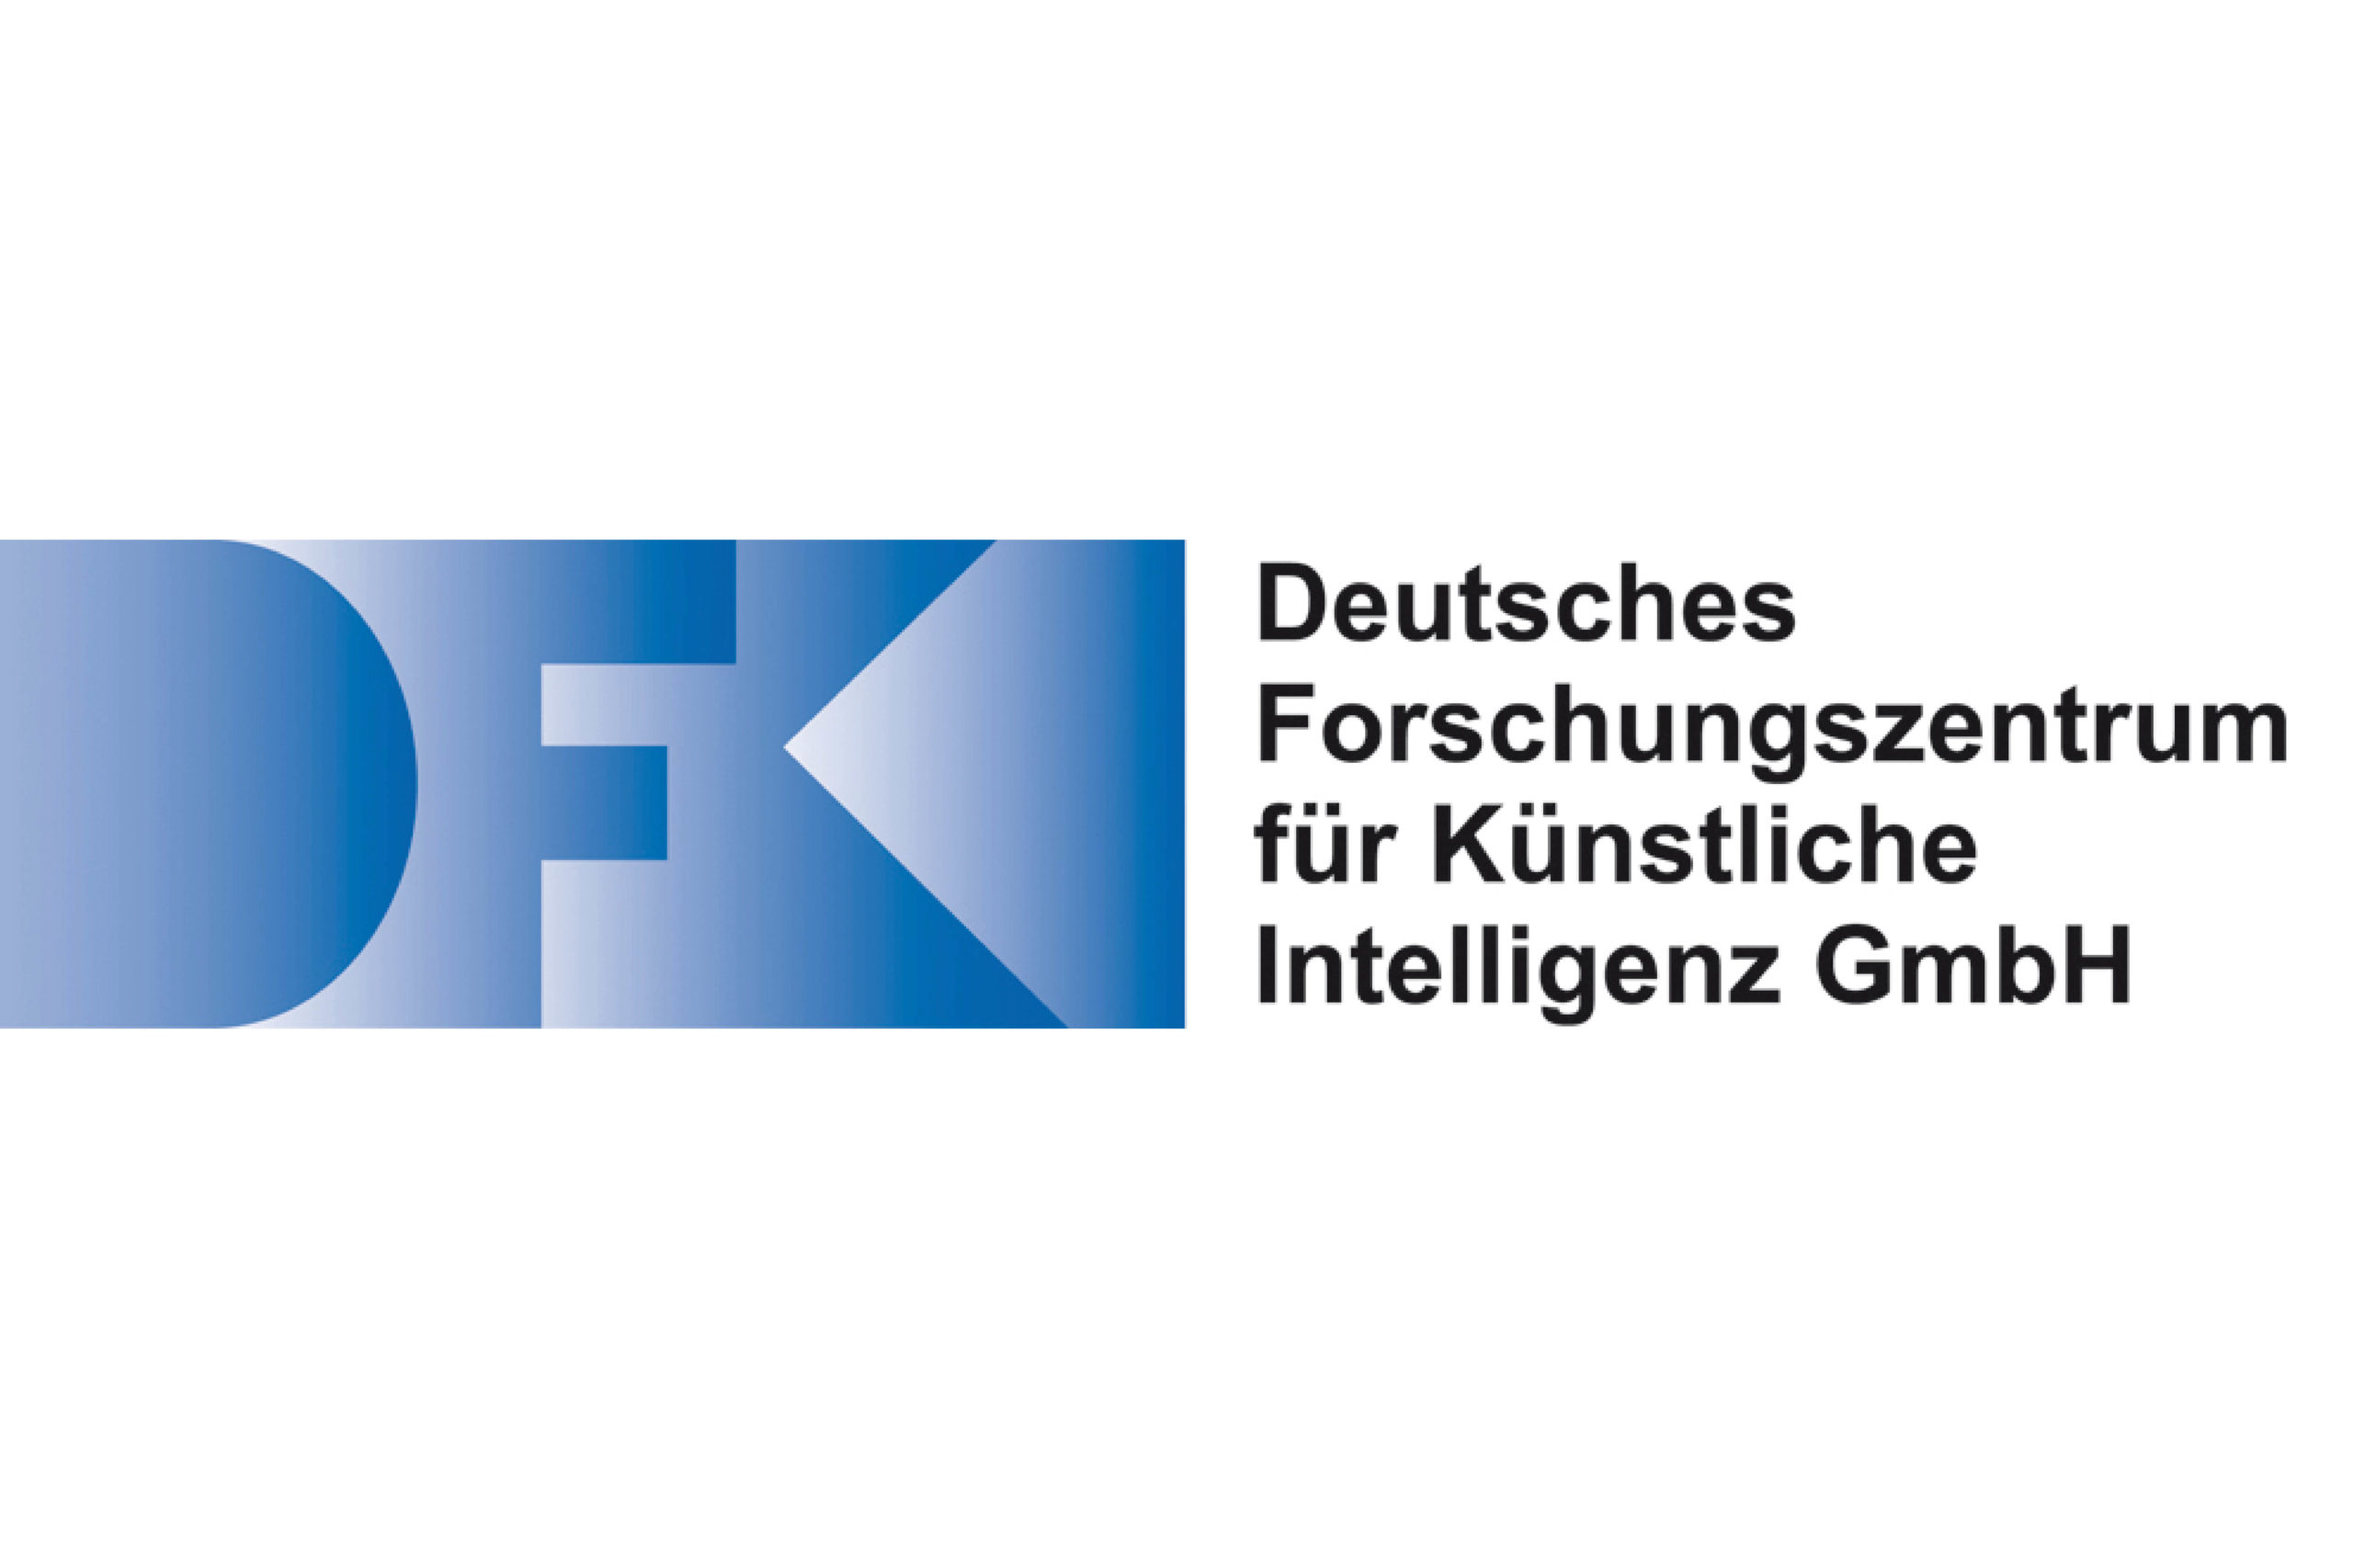 Deutsches Forschungszentrum für Künstliche Intelligenz